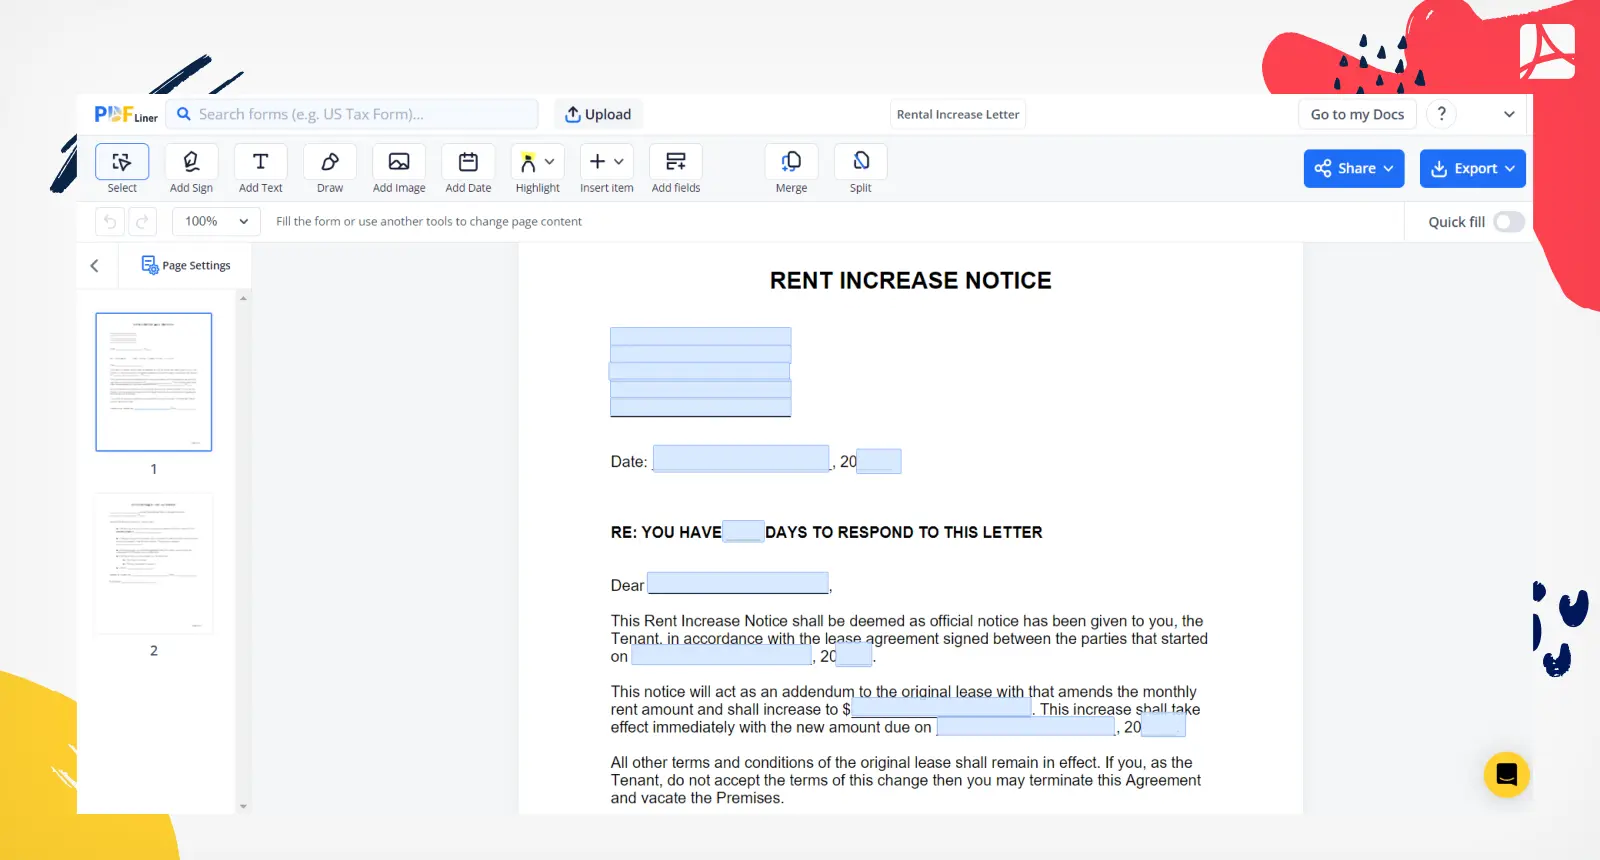 Rental Increase Letter Form Screenshot